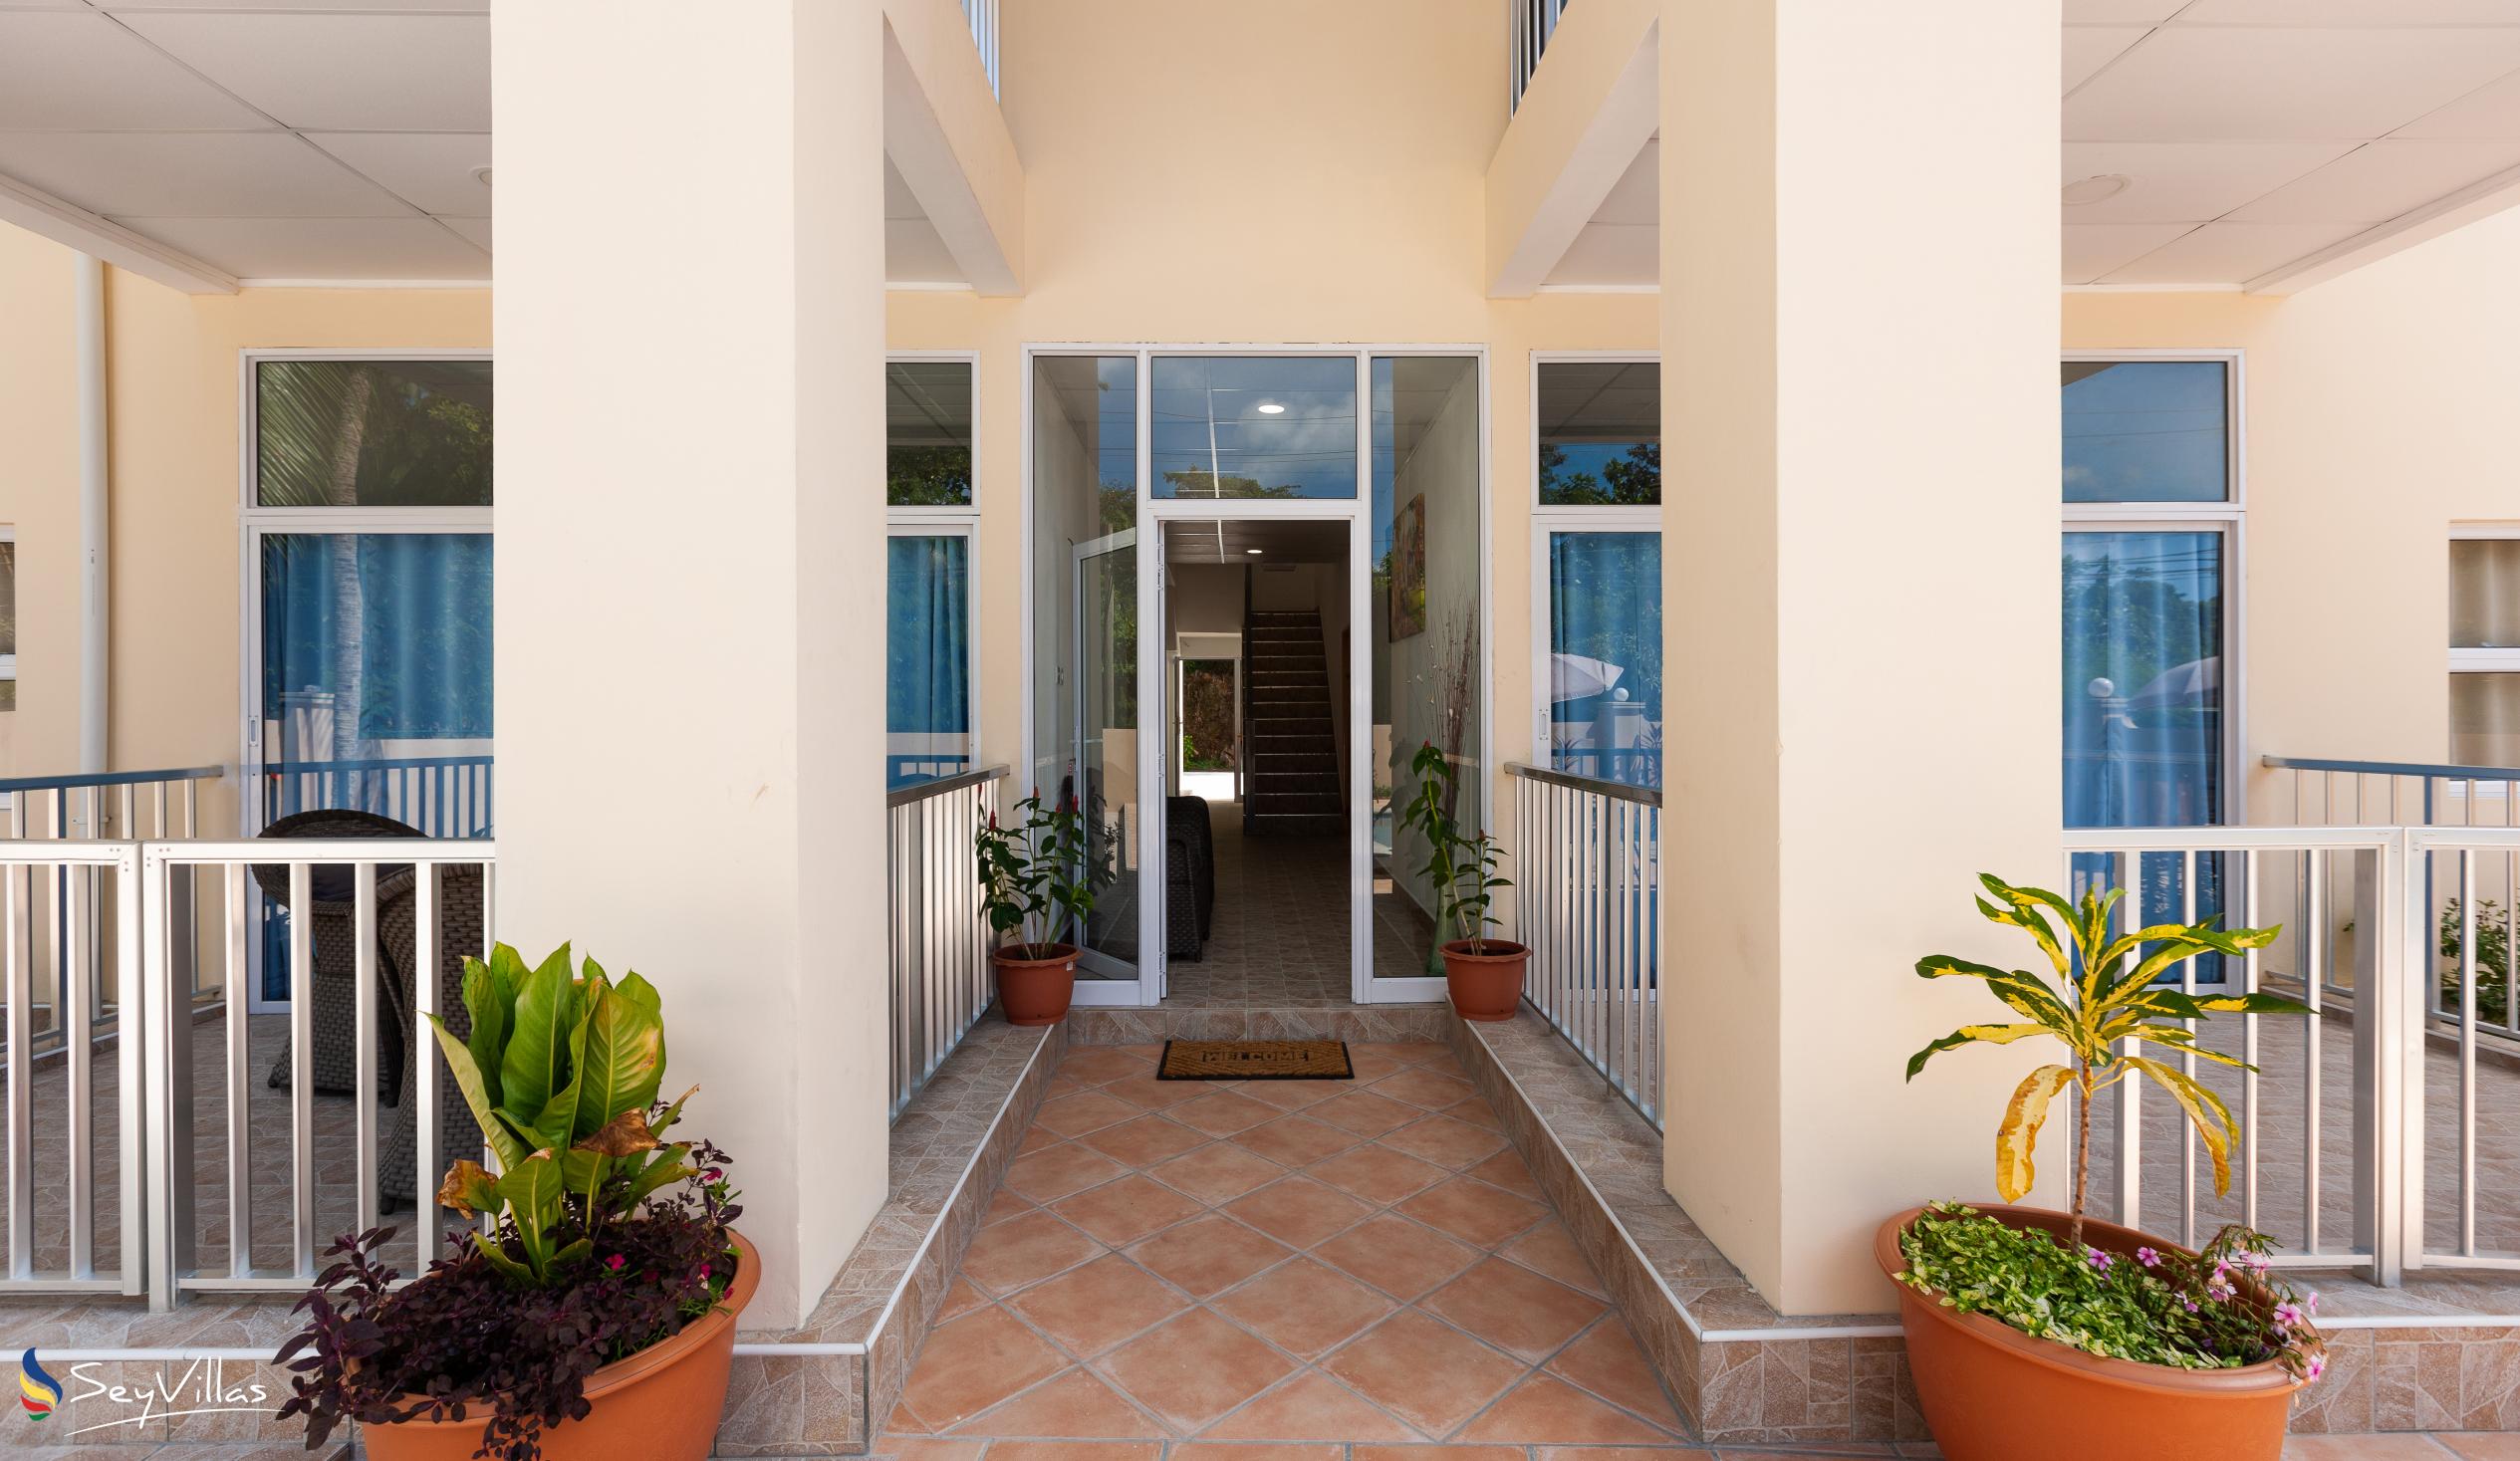 Foto 4: Home Confort - Innenbereich - Praslin (Seychellen)